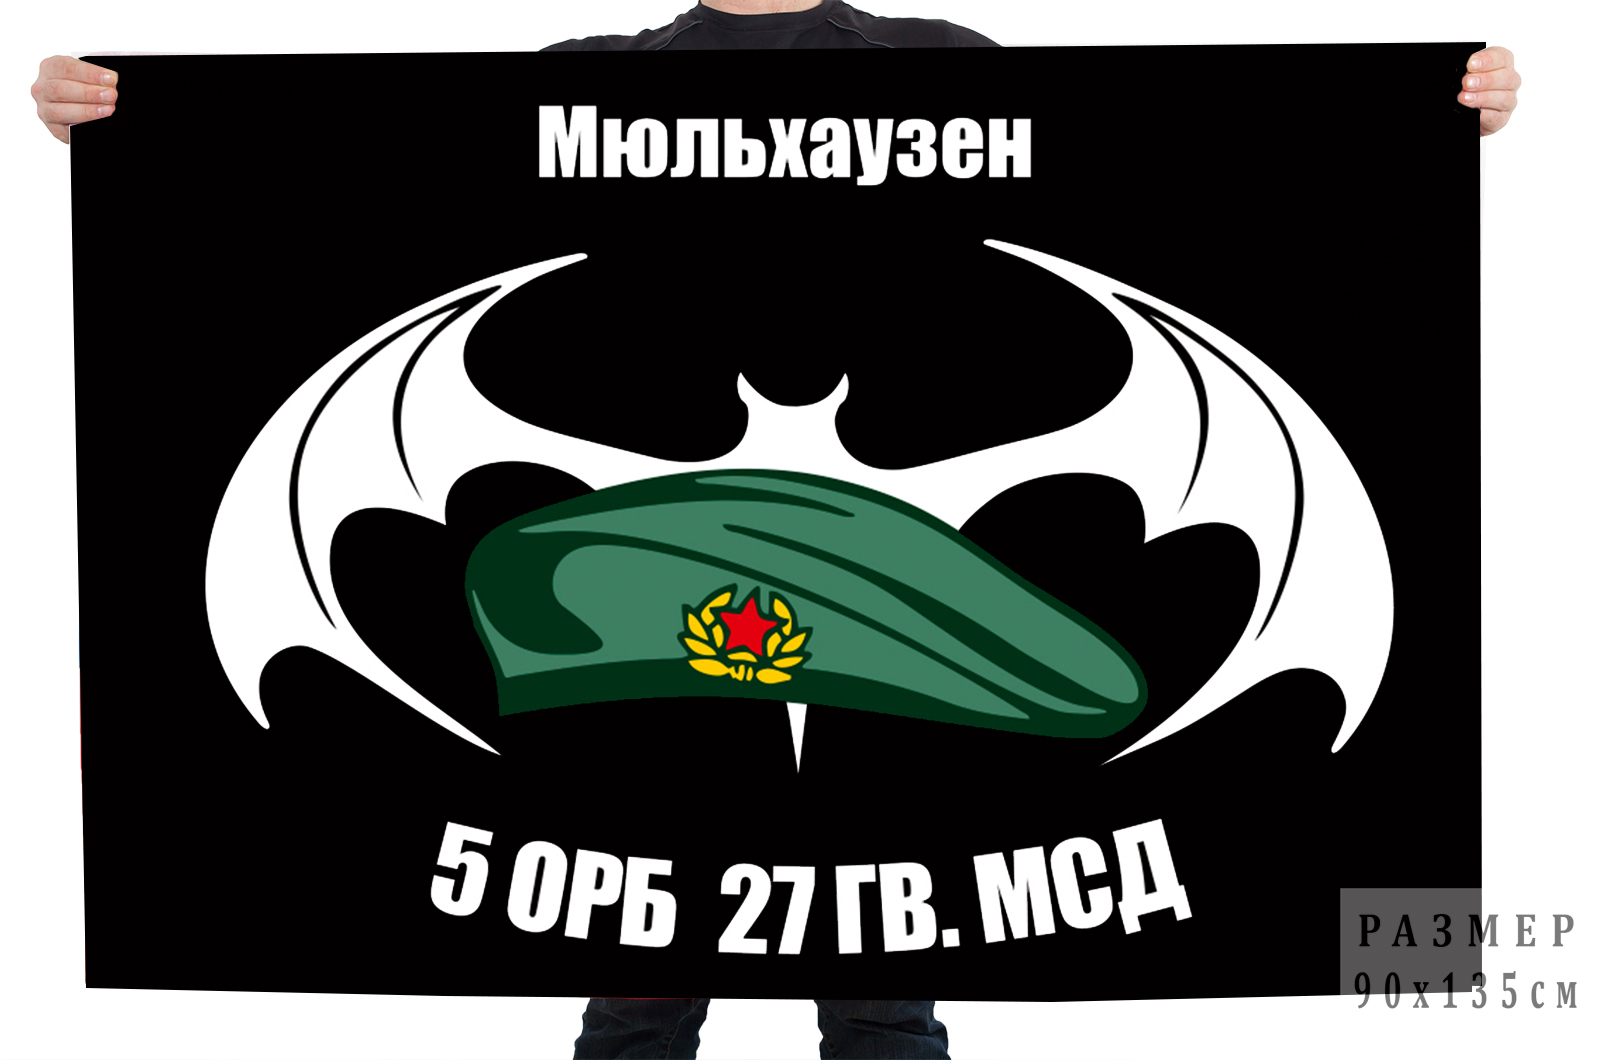  Двусторонний флаг 5 ОРБ 27 Гв. МСД